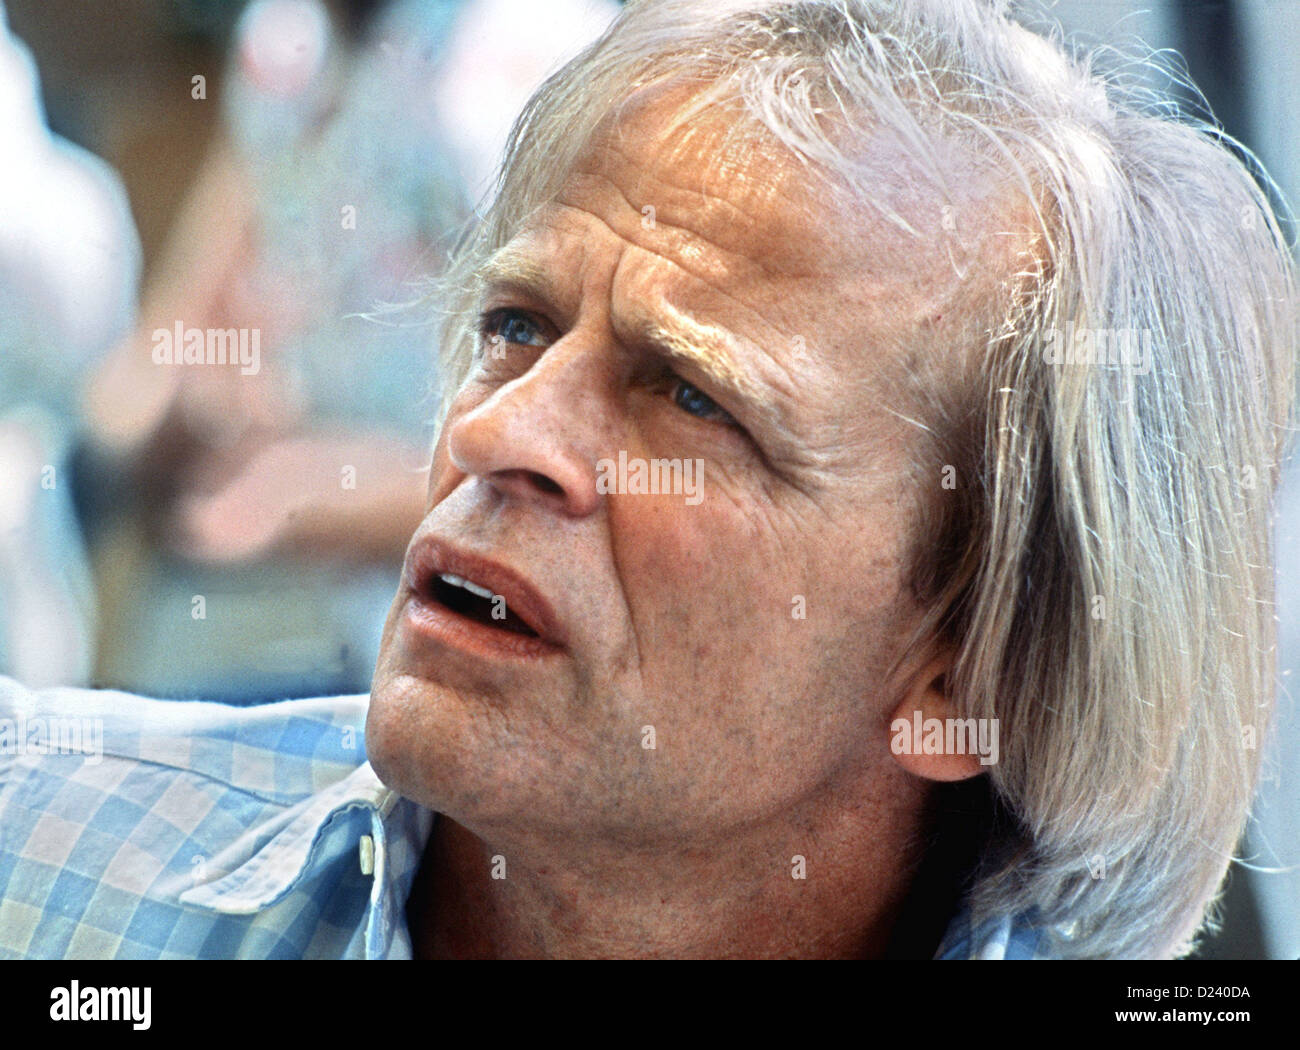 (Afp) - L'acteur allemand Klaus Kinski, photographié pendant le Festival International du Film de Cannes, France, 25 mai 1982. Un 'enfant terrible' de l'industrie du cinéma, ses films : 'Aguirre, der Zorn Gottes' ('Aguirre, la colère de Dieu') et 'Nosferatu : Phantom der Nacht' ('Nosferatu le Vampire'). Kinski est né le 18 octobre 1926 à Danzig, Allemagne (aujourd'hui Gdansk, Pologne) sous le nom de Nikolaus Guenther Nakszynski et mort le 23 novembre 1991 à Lagunitas, en Californie, d'une crise cardiaque. Banque D'Images